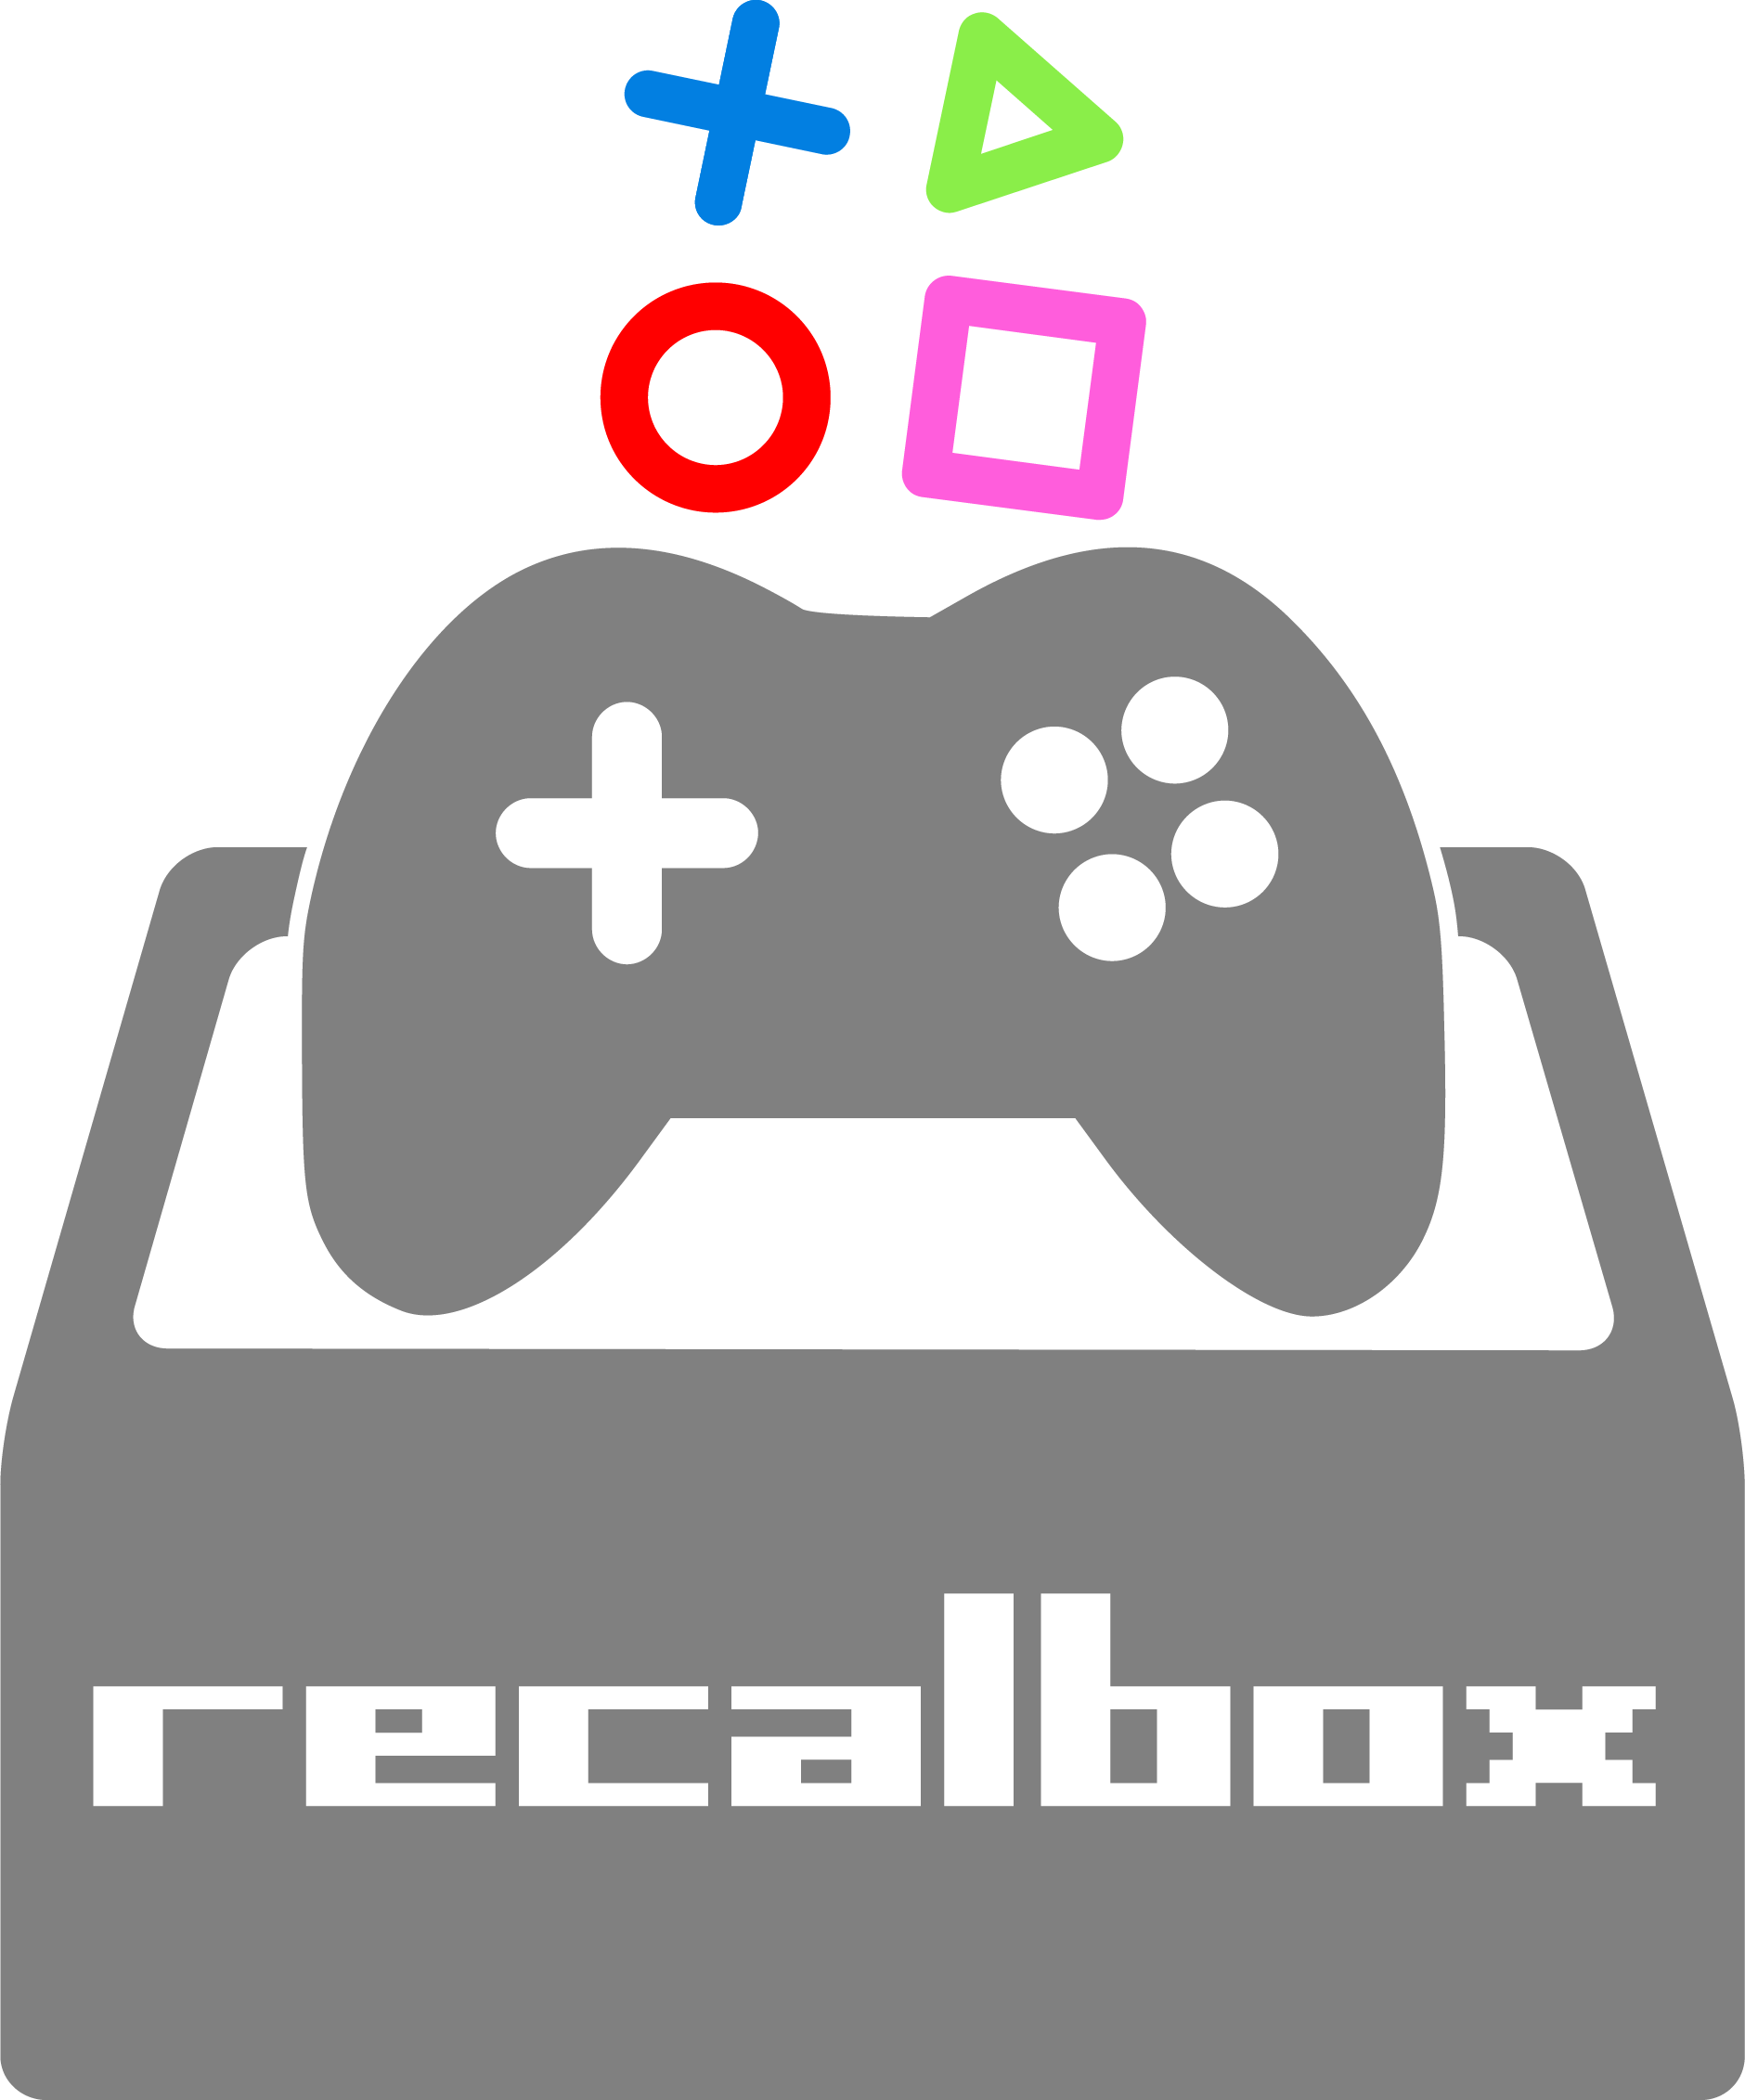 Recalbox est un système d'exploitation Linux libre et gratuit dédié à l'émulation, la préservation et l'accessibilité des vieux jeux vidéo